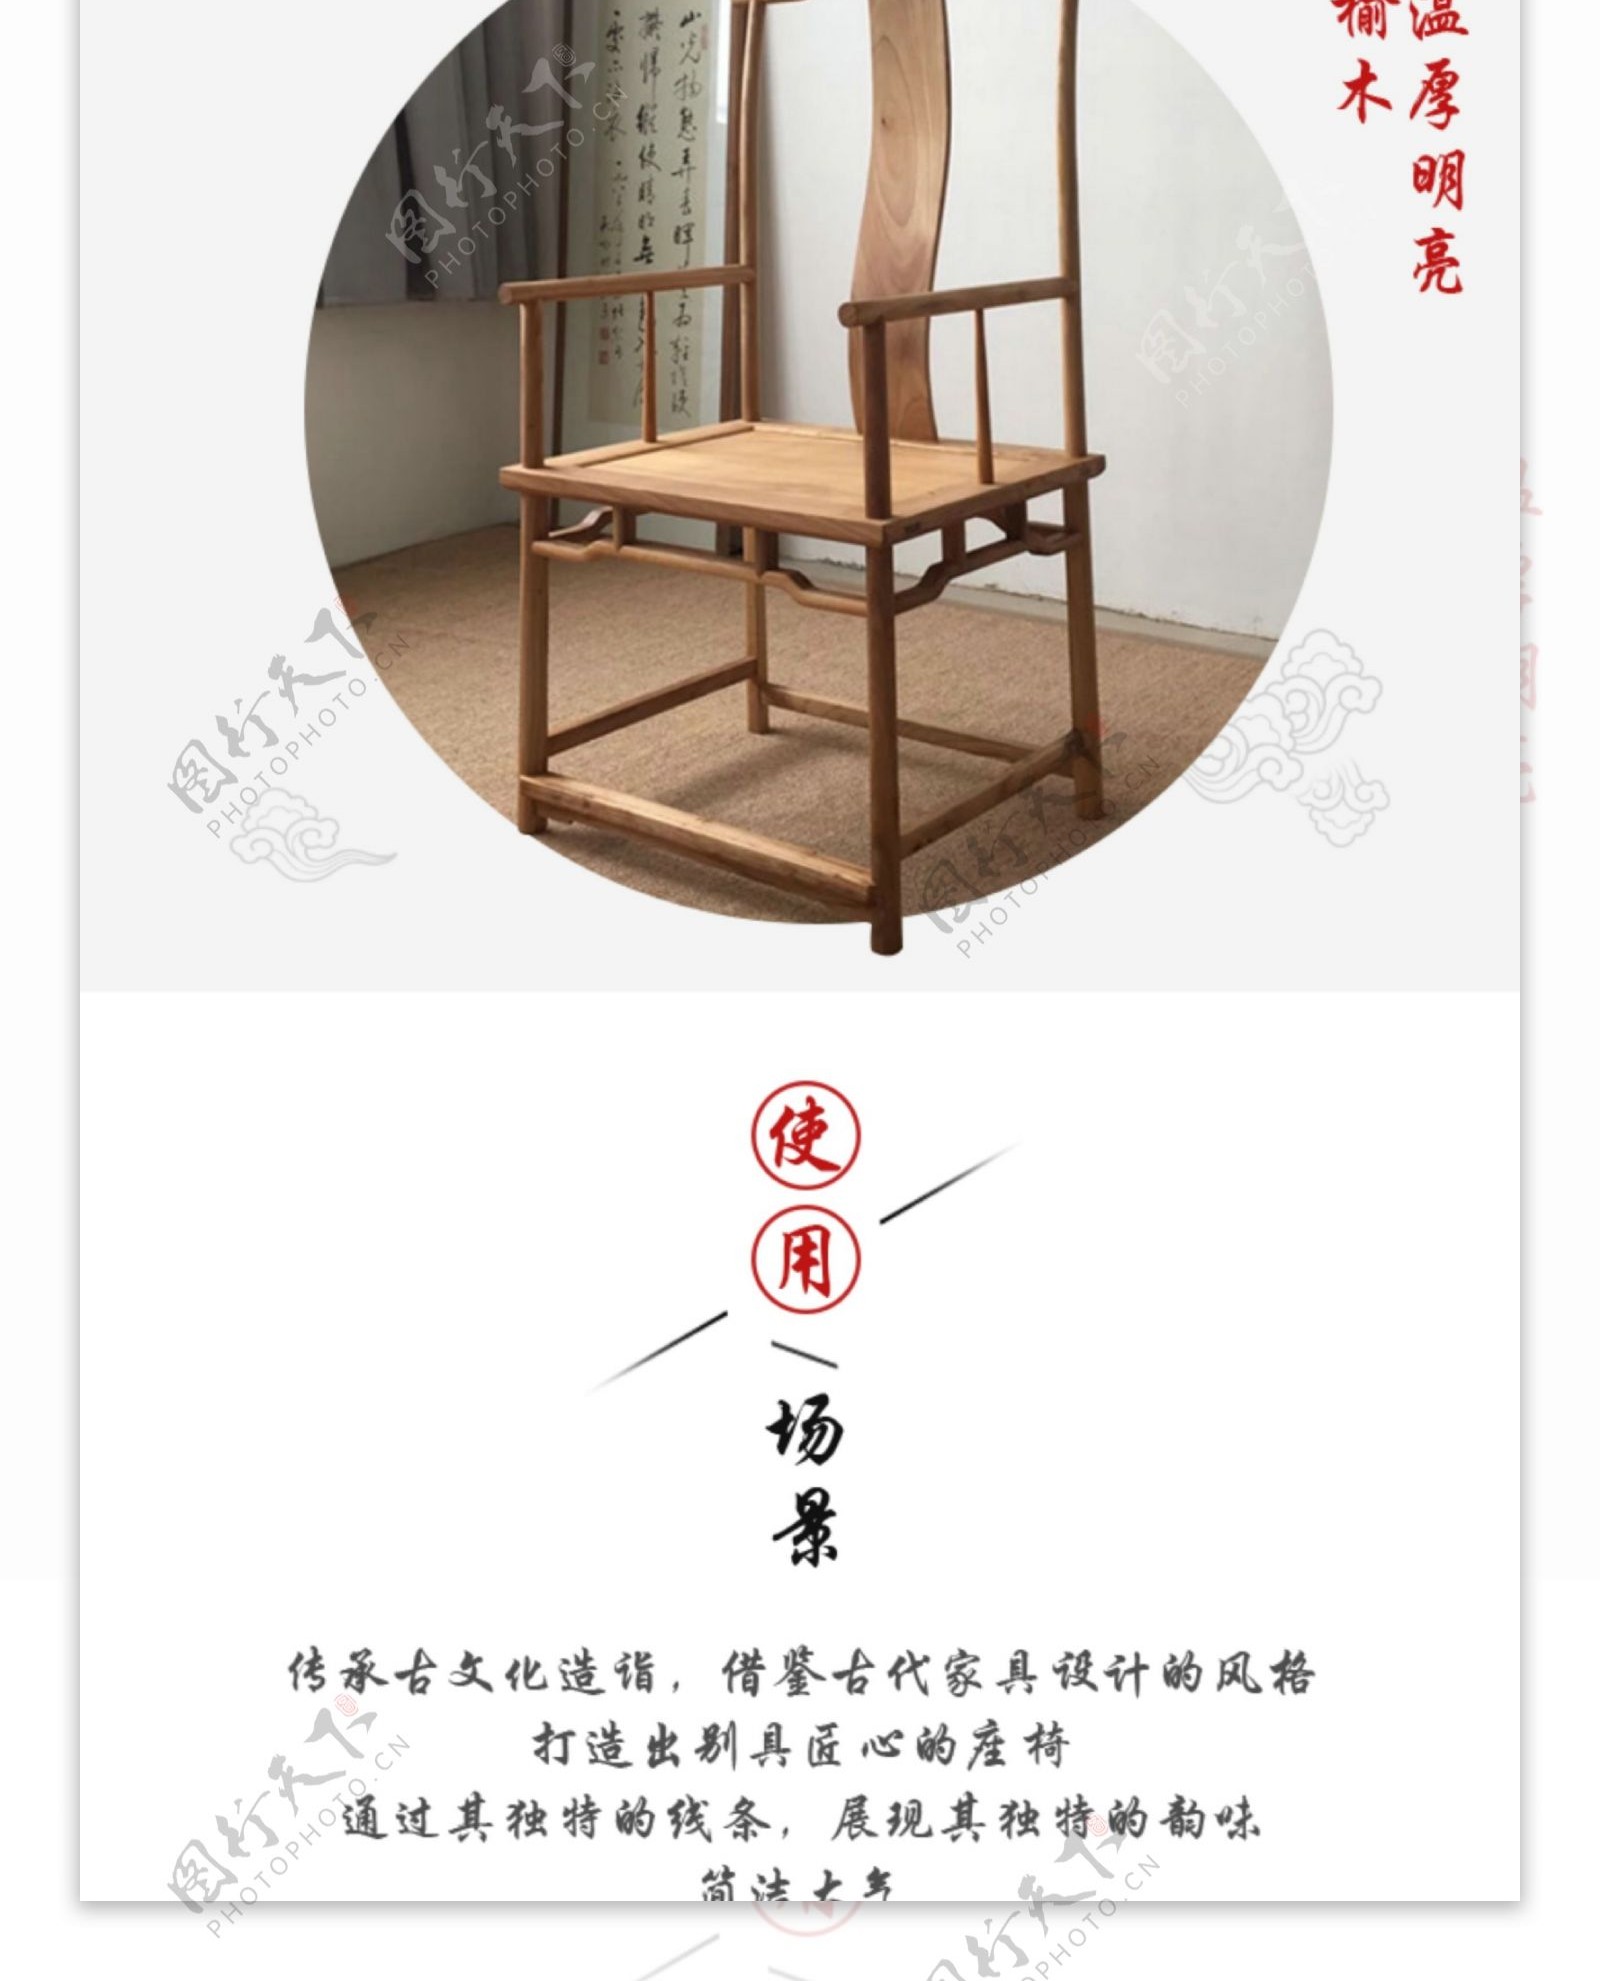 椅子详情页传统木艺简约中国风